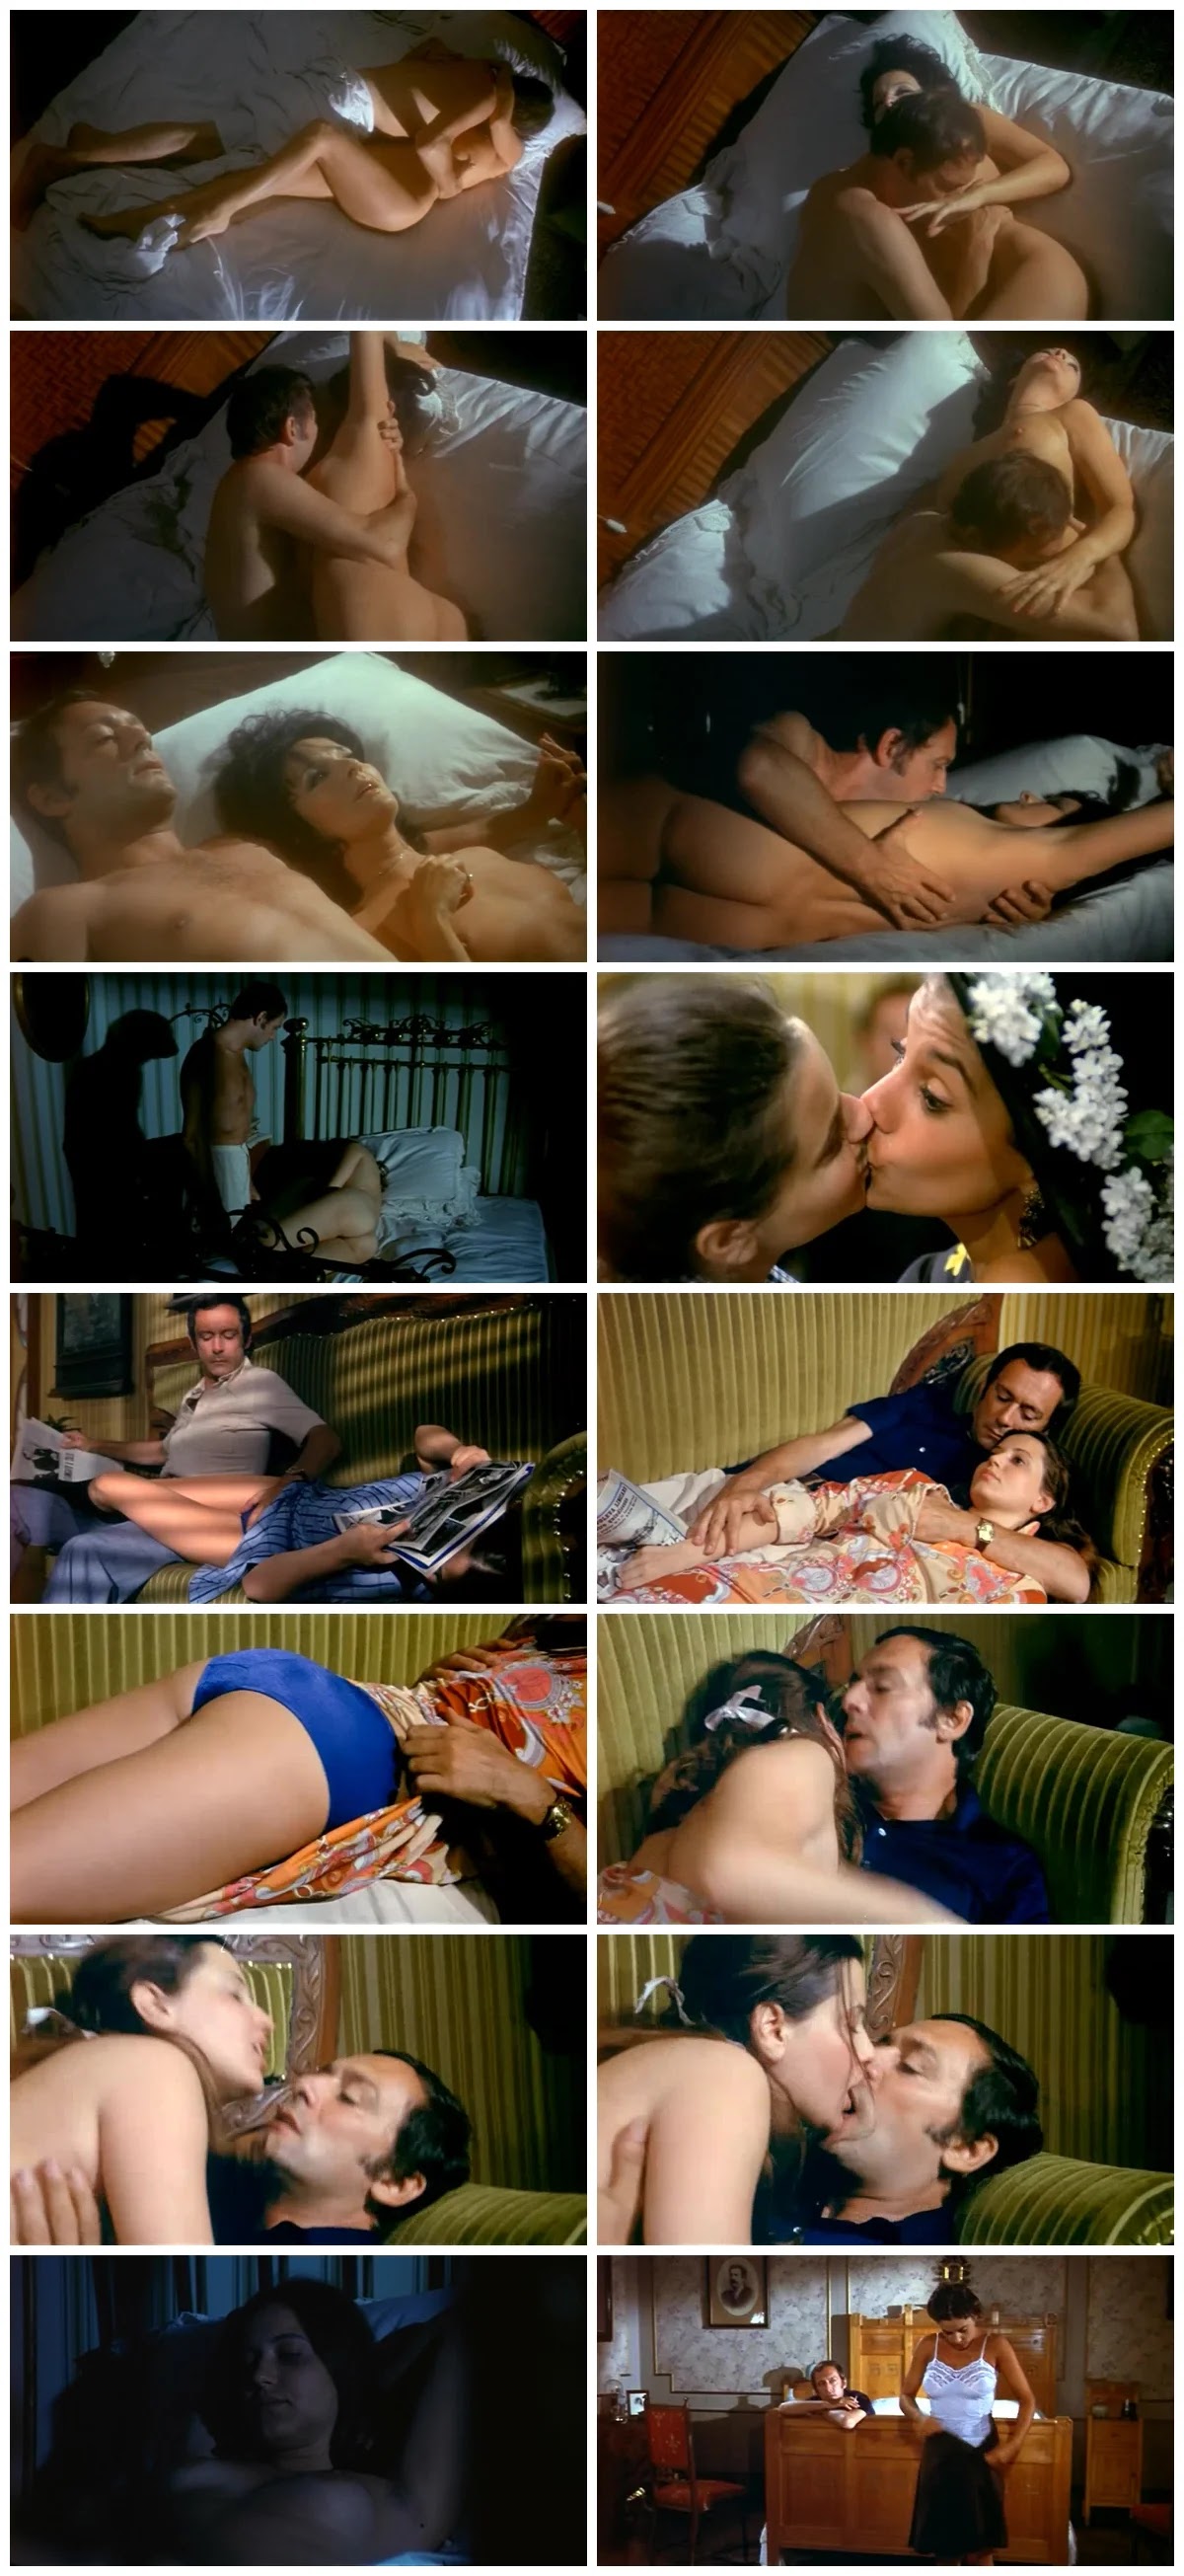 La seduzione (1973) EroGarga Watch Free Vintage Porn Movies, Retro Sex Videos, Mobile Porn